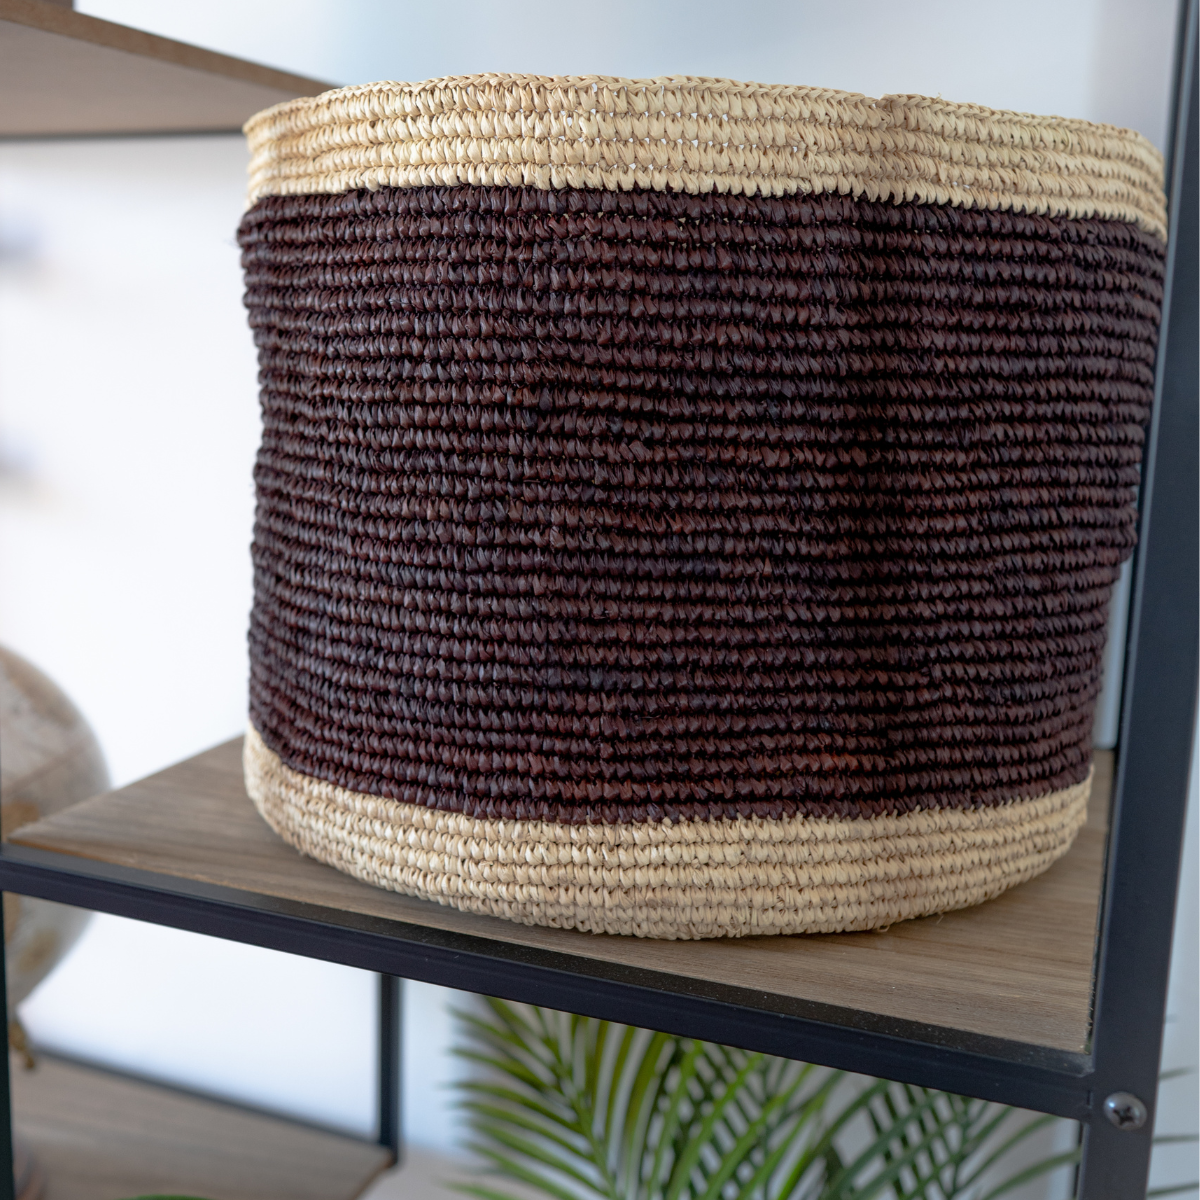 Grâce au savoir-faire et à la créativité des artisans malgaches qui l'ont réalisé, ce panier est bien plus qu'un simple contenant, c'est une pièce unique et précieuse qui apporte une touche artisanale et naturelle à votre intérieur.